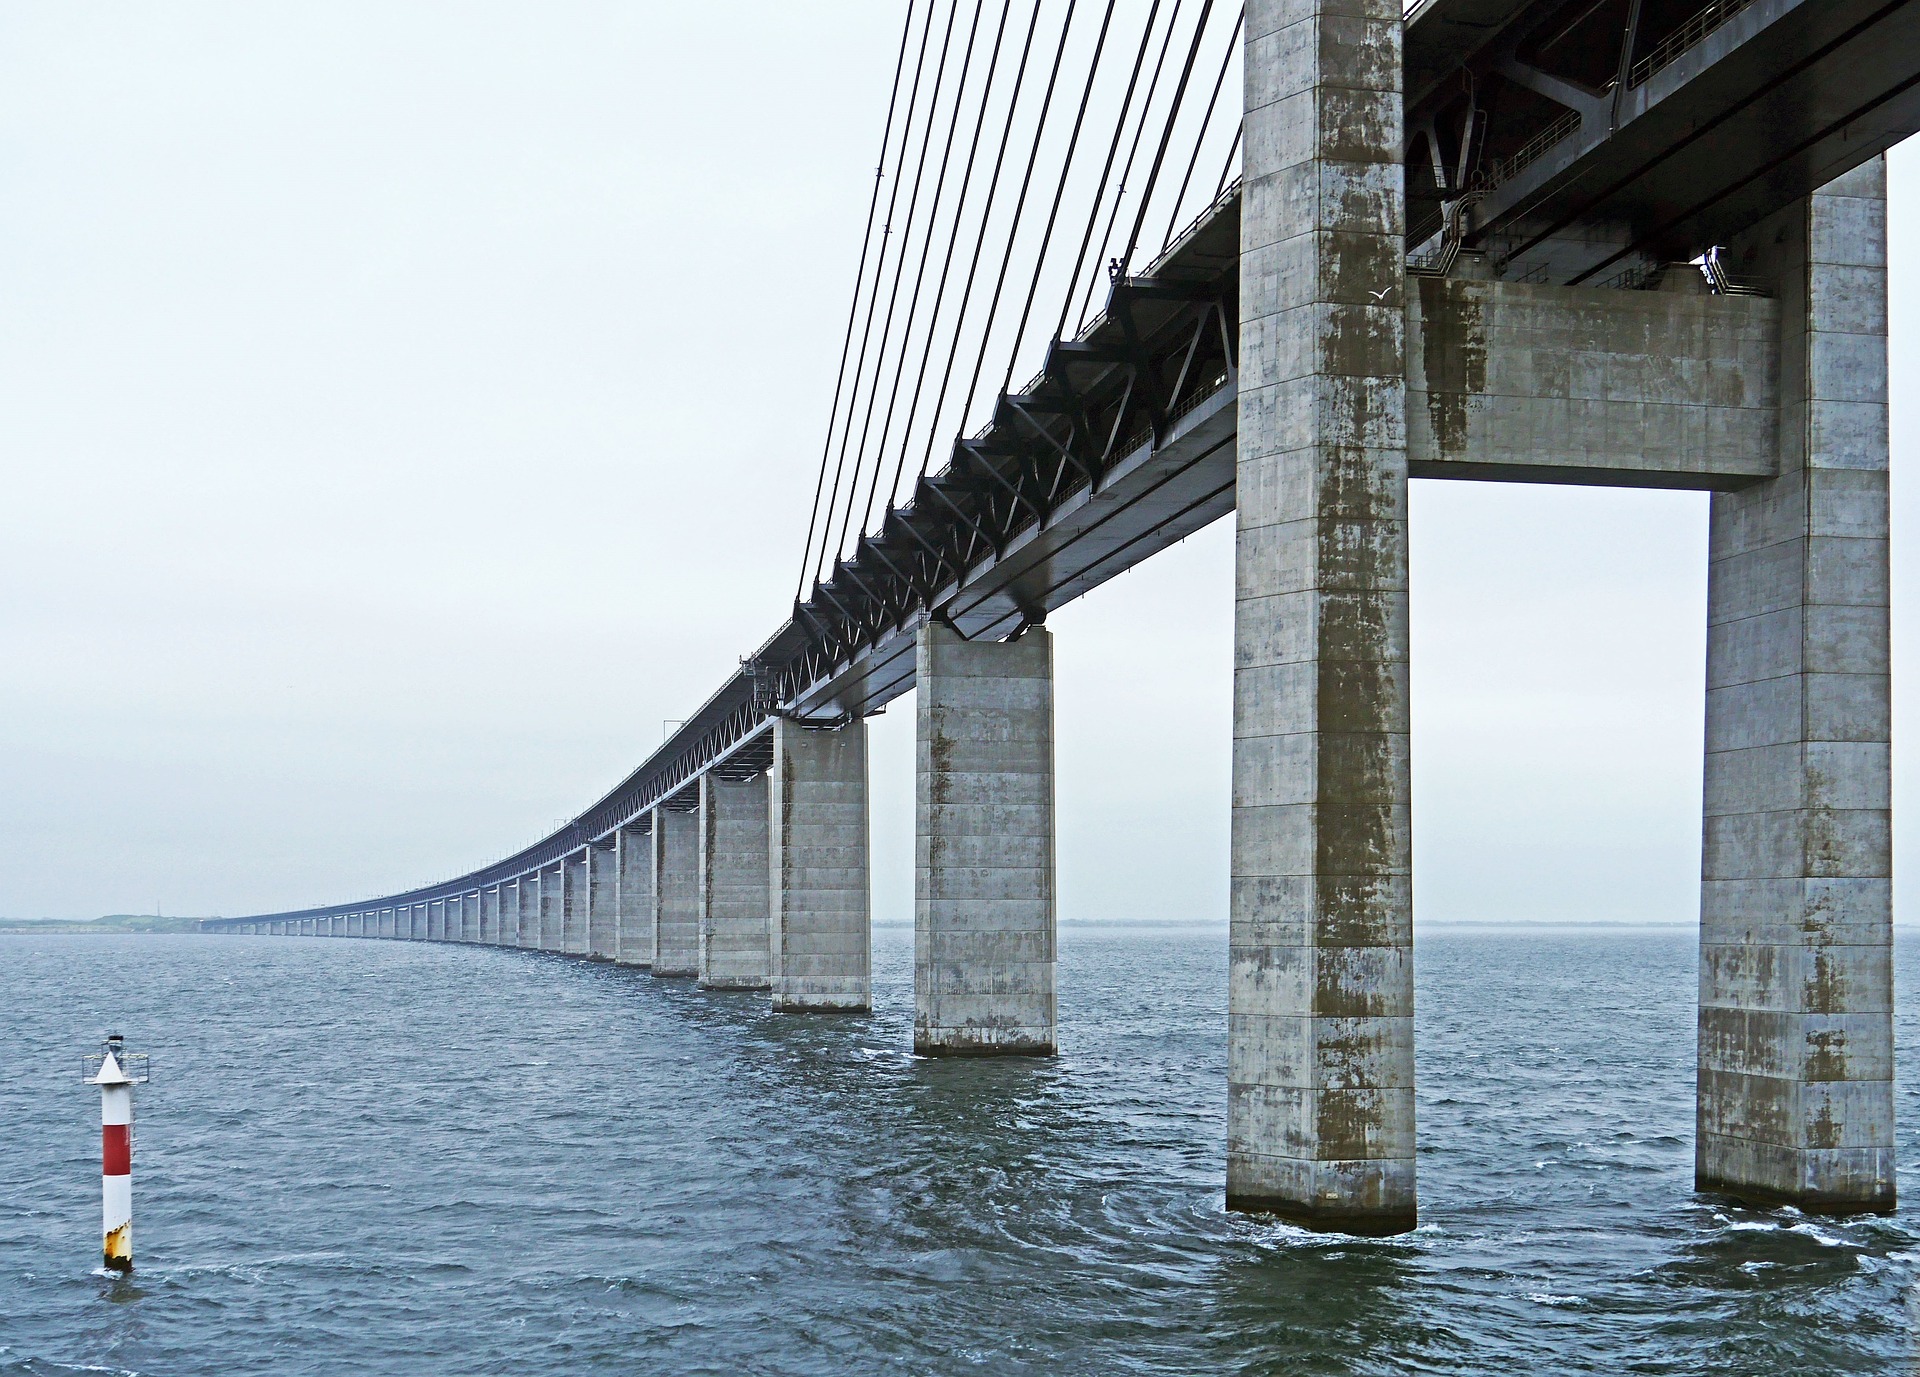 Oresund Bridge between Denmark and Sweden